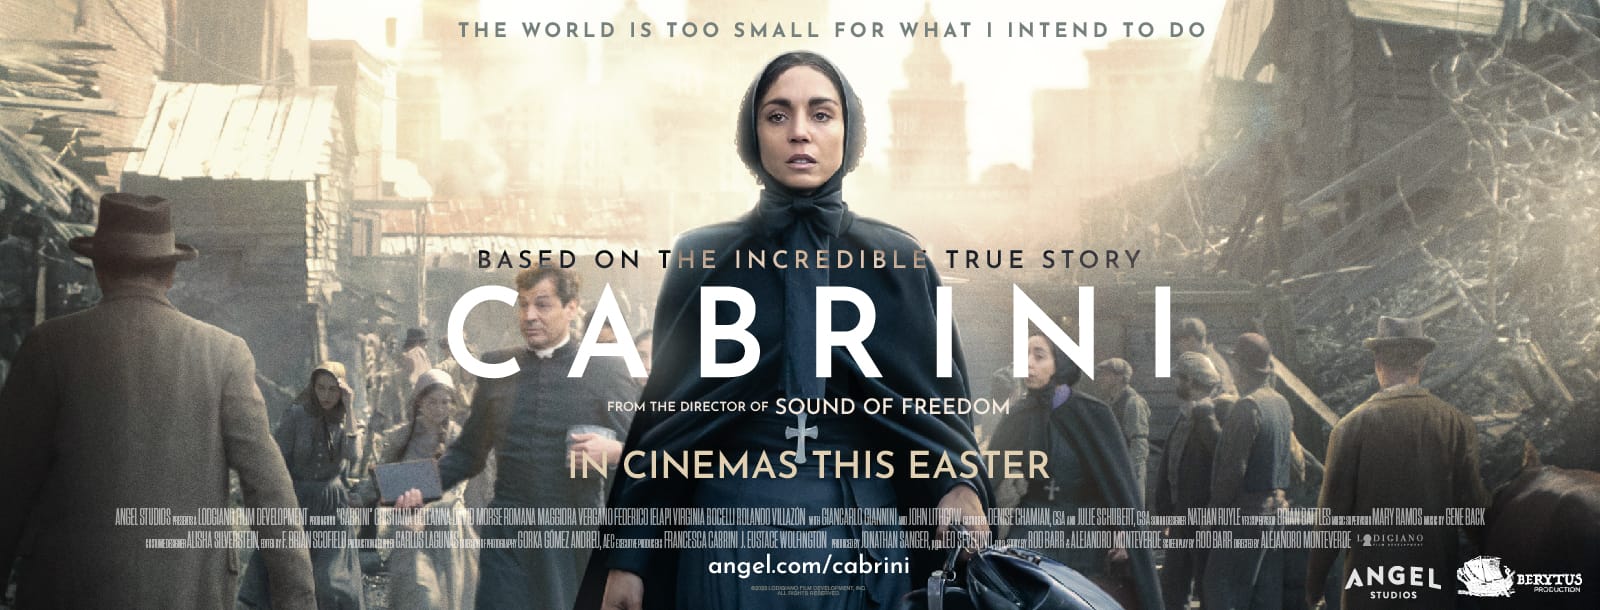 فيلم القديسة كابريني – Cabrini وبطلته في لبنان قريباً!